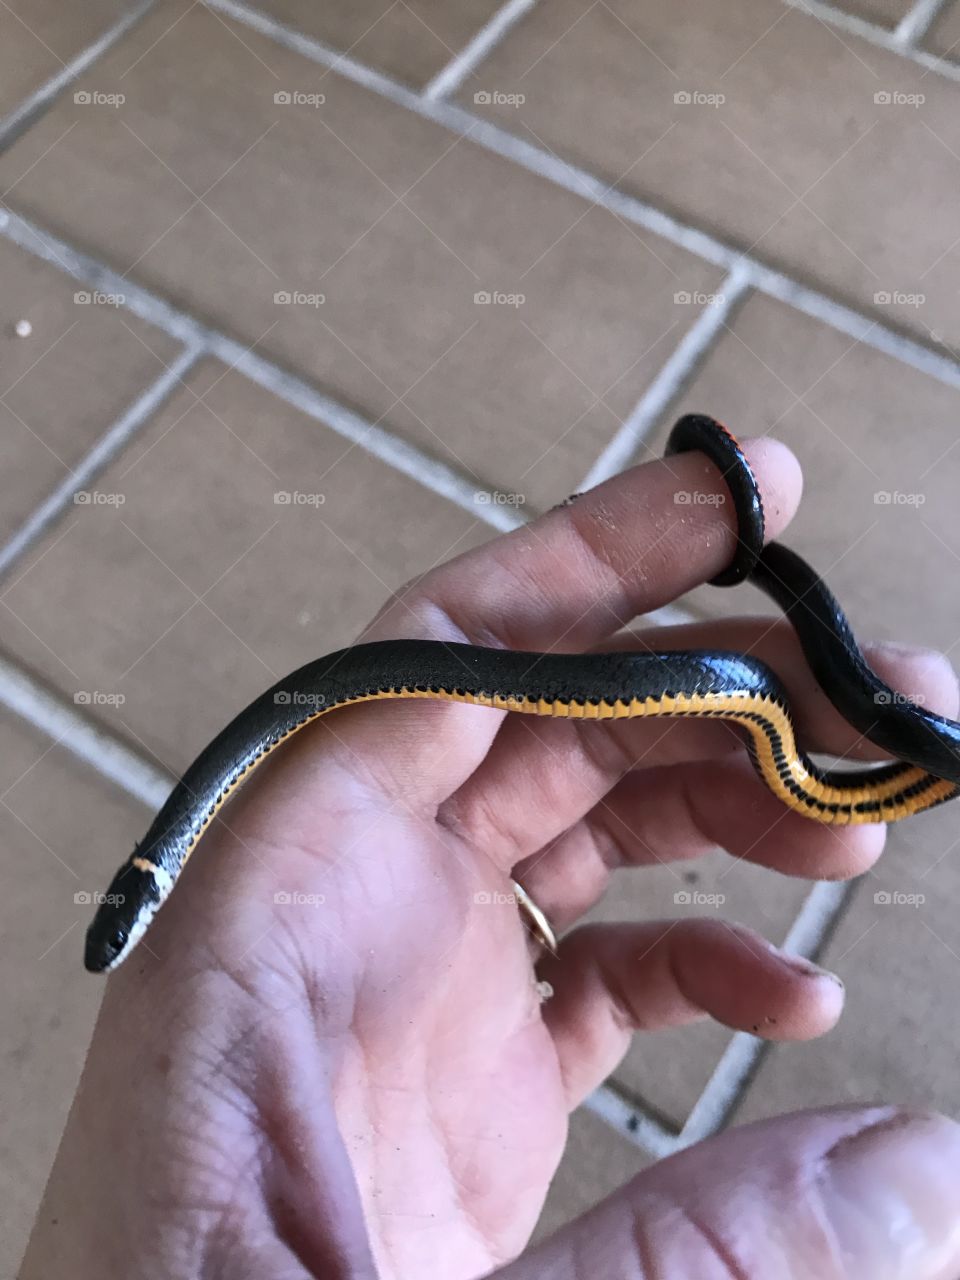 Little snake in hand